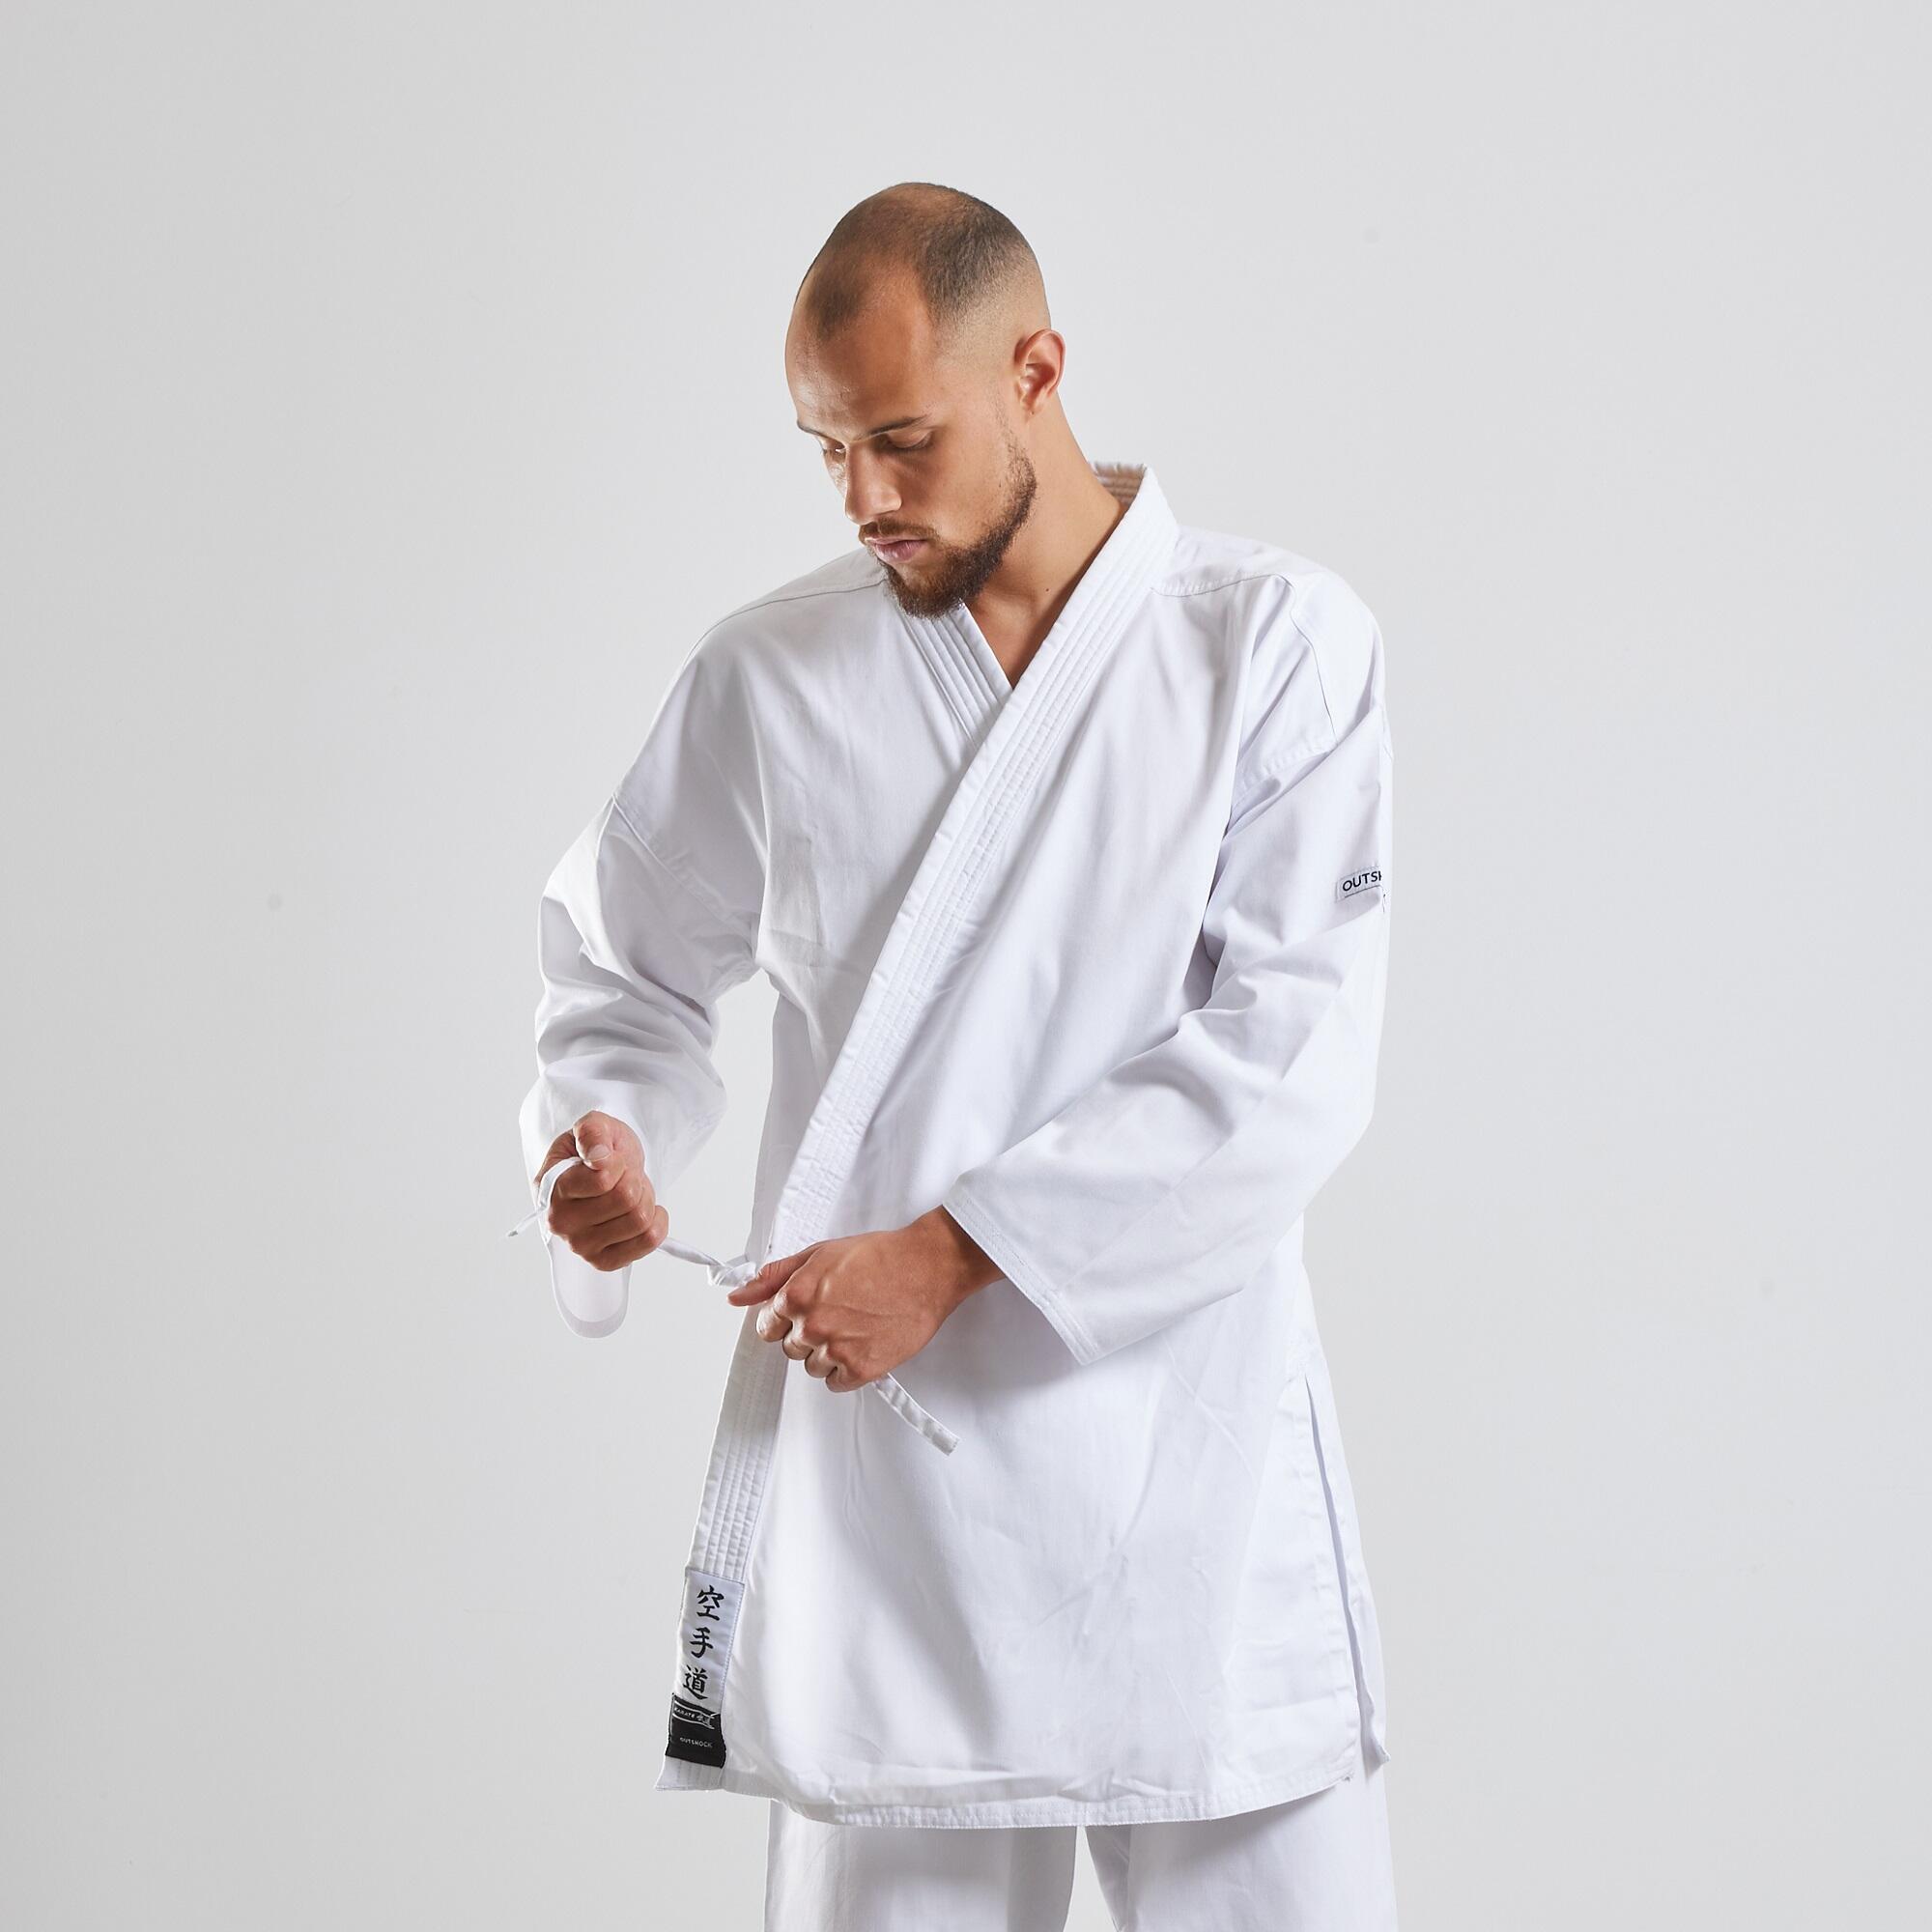 Kimono karategi Outshock 100 blanco | Decathlon